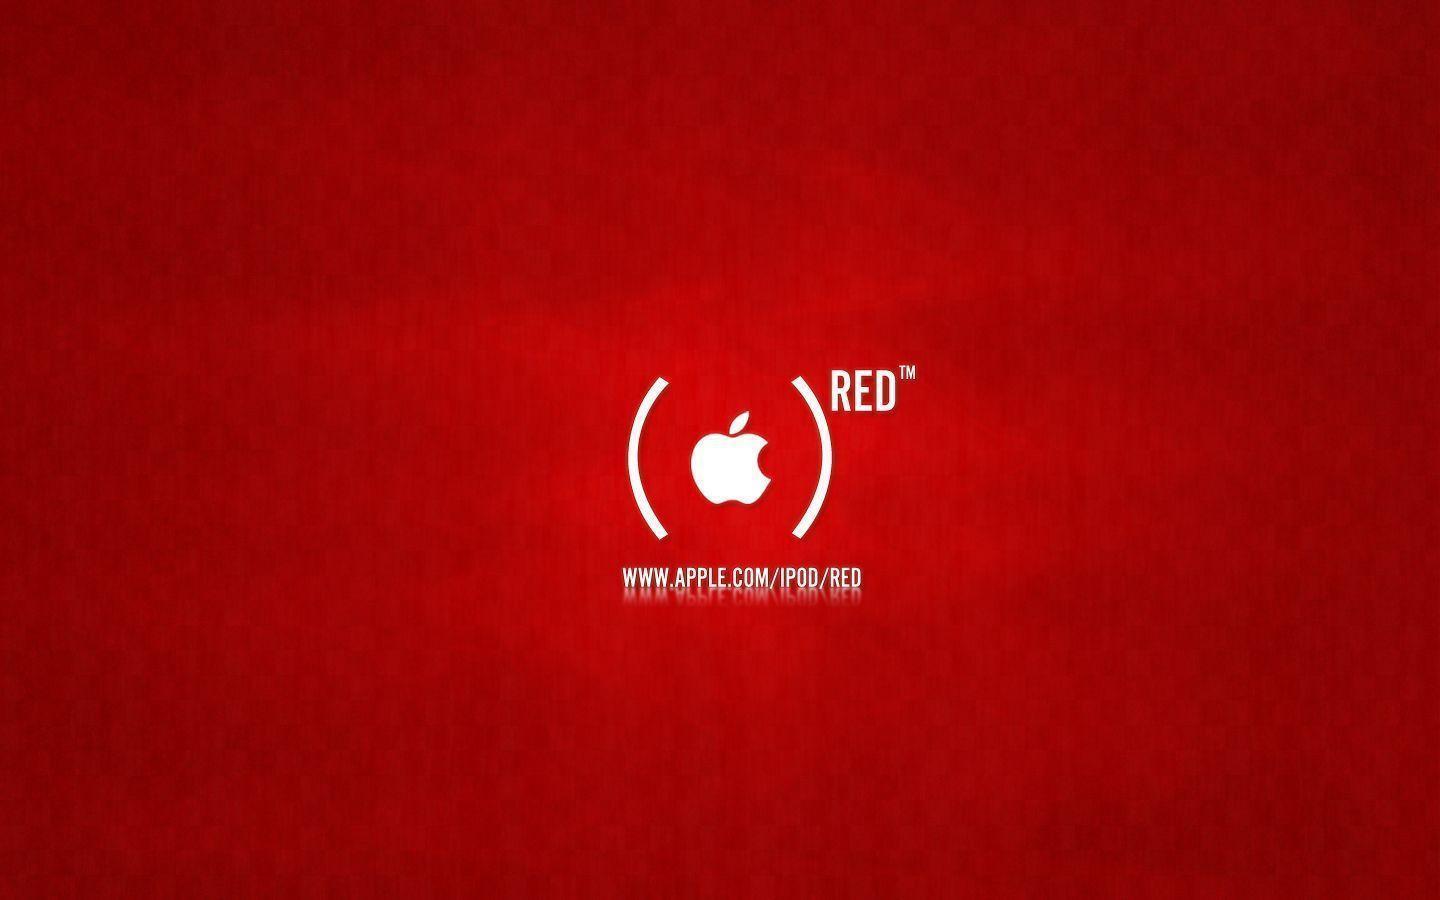 Red Apple Logo - Red Apple Logo Wallpaper